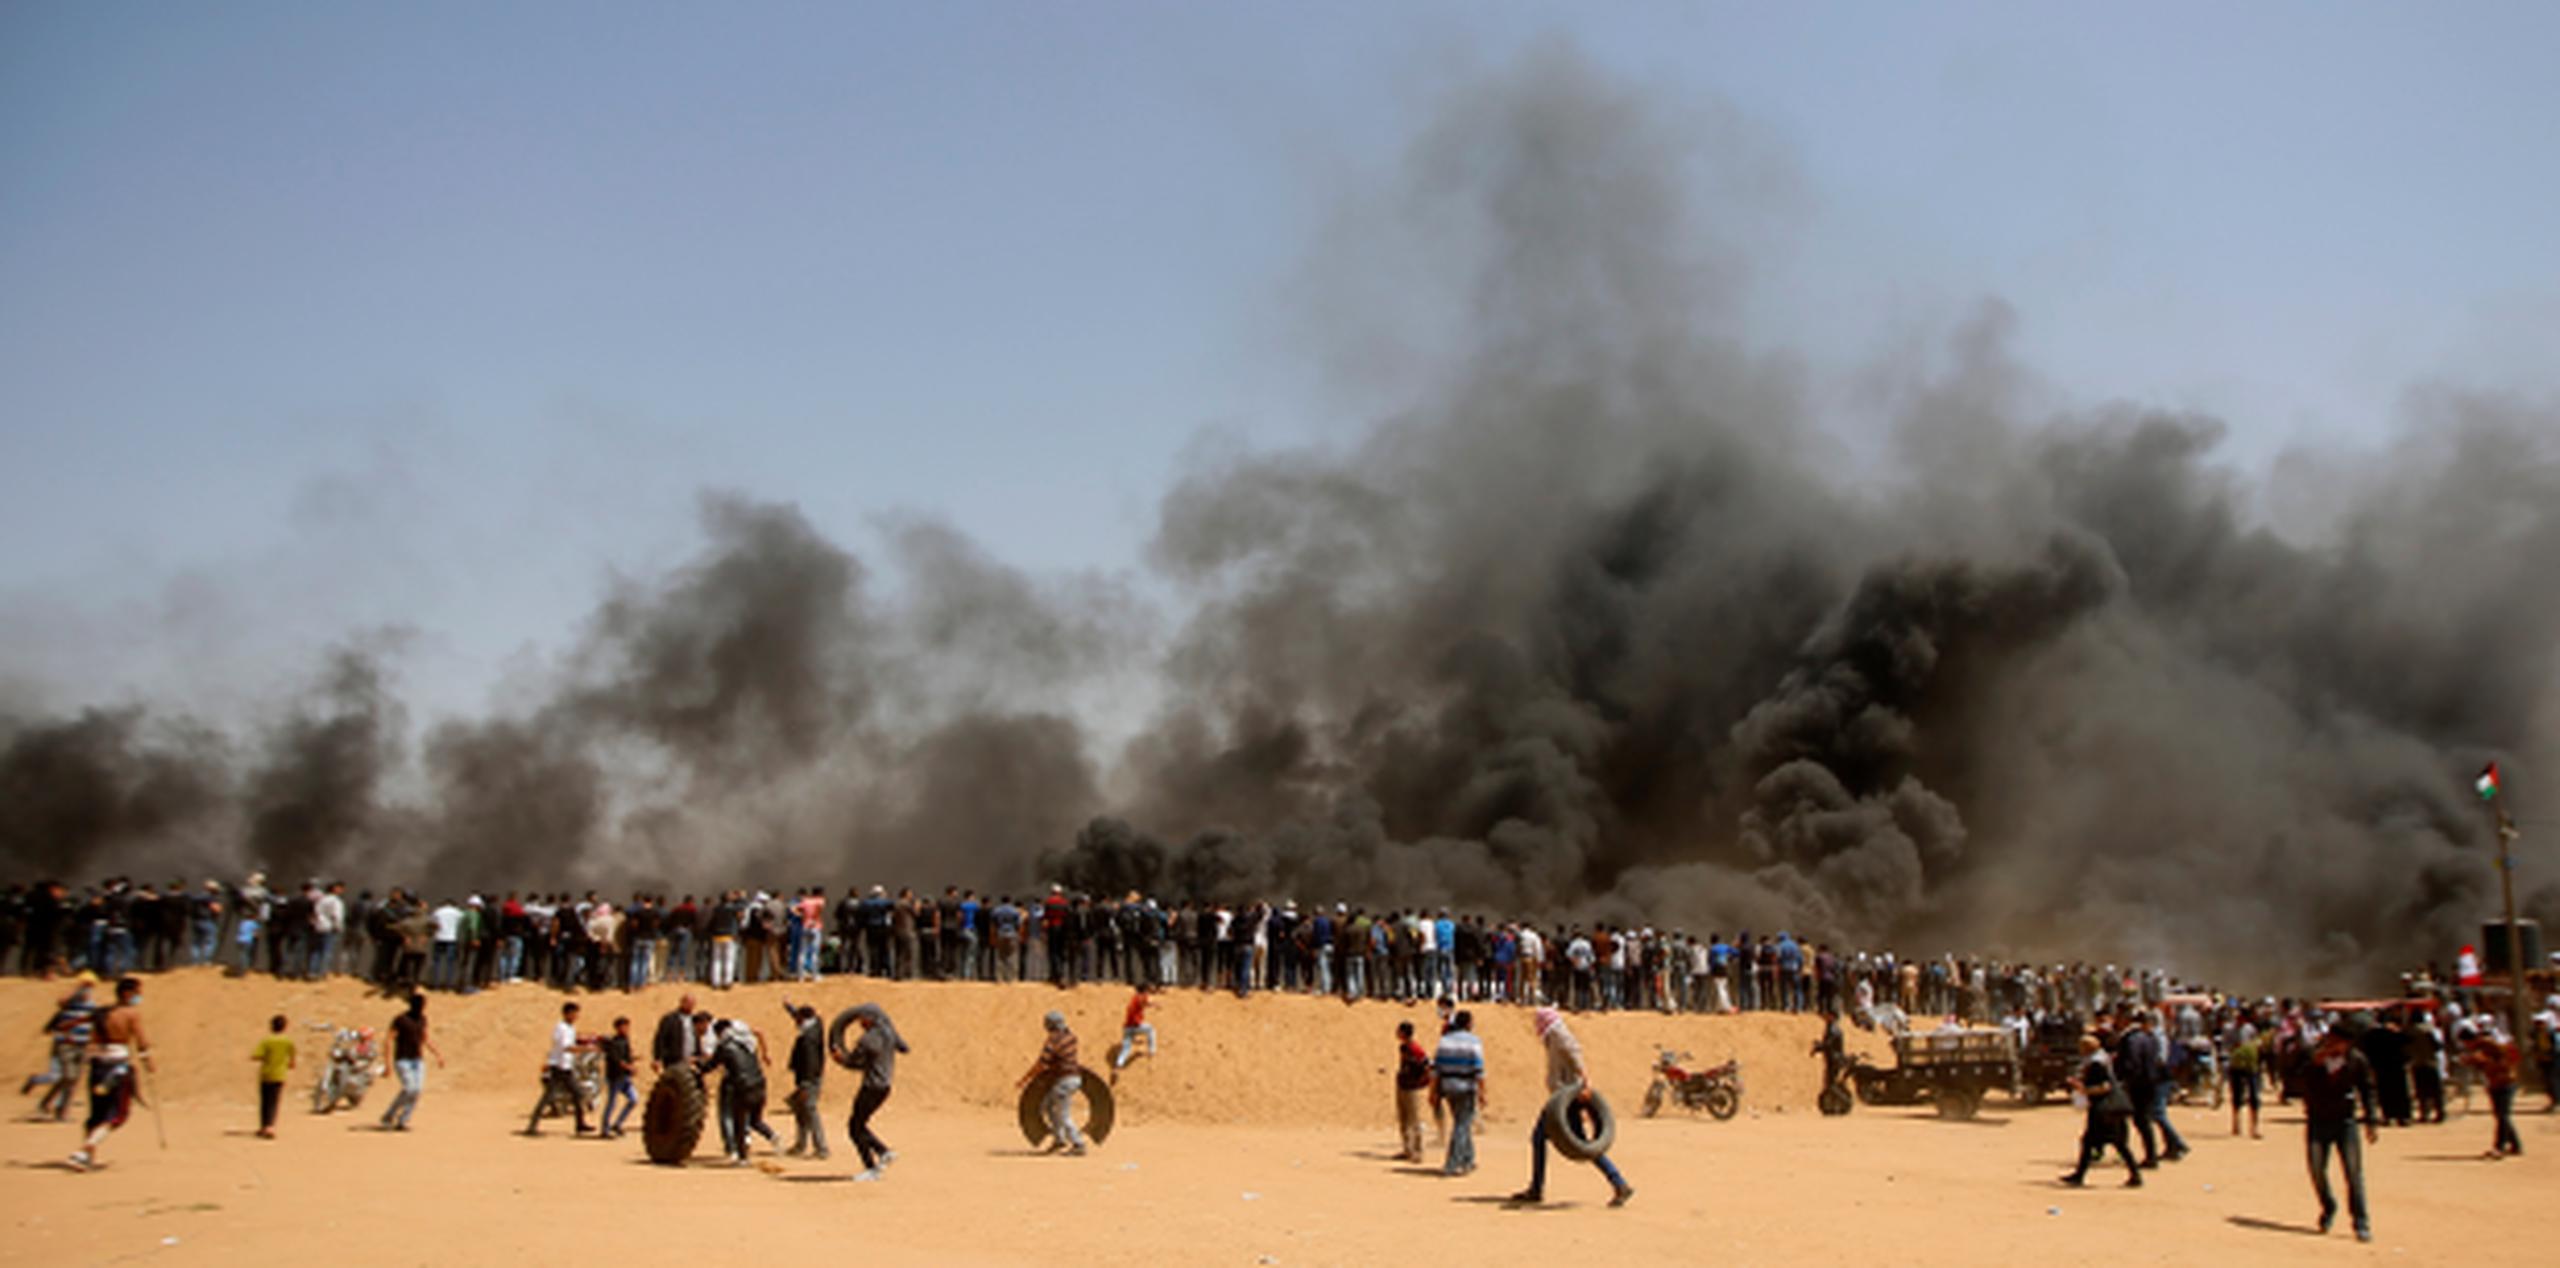 Manifestantes palestinos esperan en una duna de arena mientras otros trasladan neumáticos para quemarlos durante enfrentamientos con tropas israelíes junto a la frontera entre la Franja de Gaza e Israel. (AP)